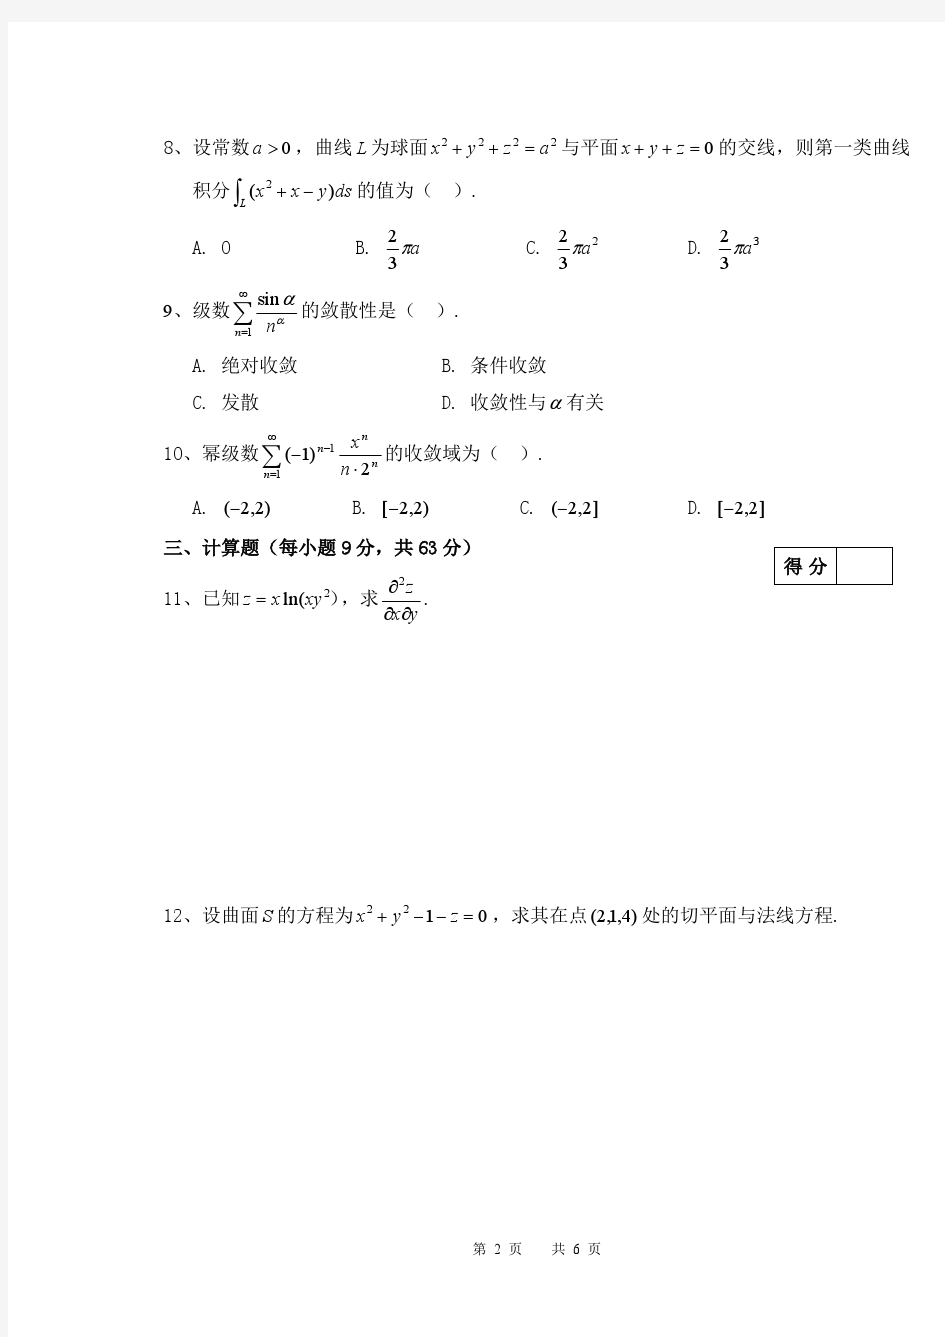 安徽大学2014-2015(1)高等数学A(二)、B(二)A卷